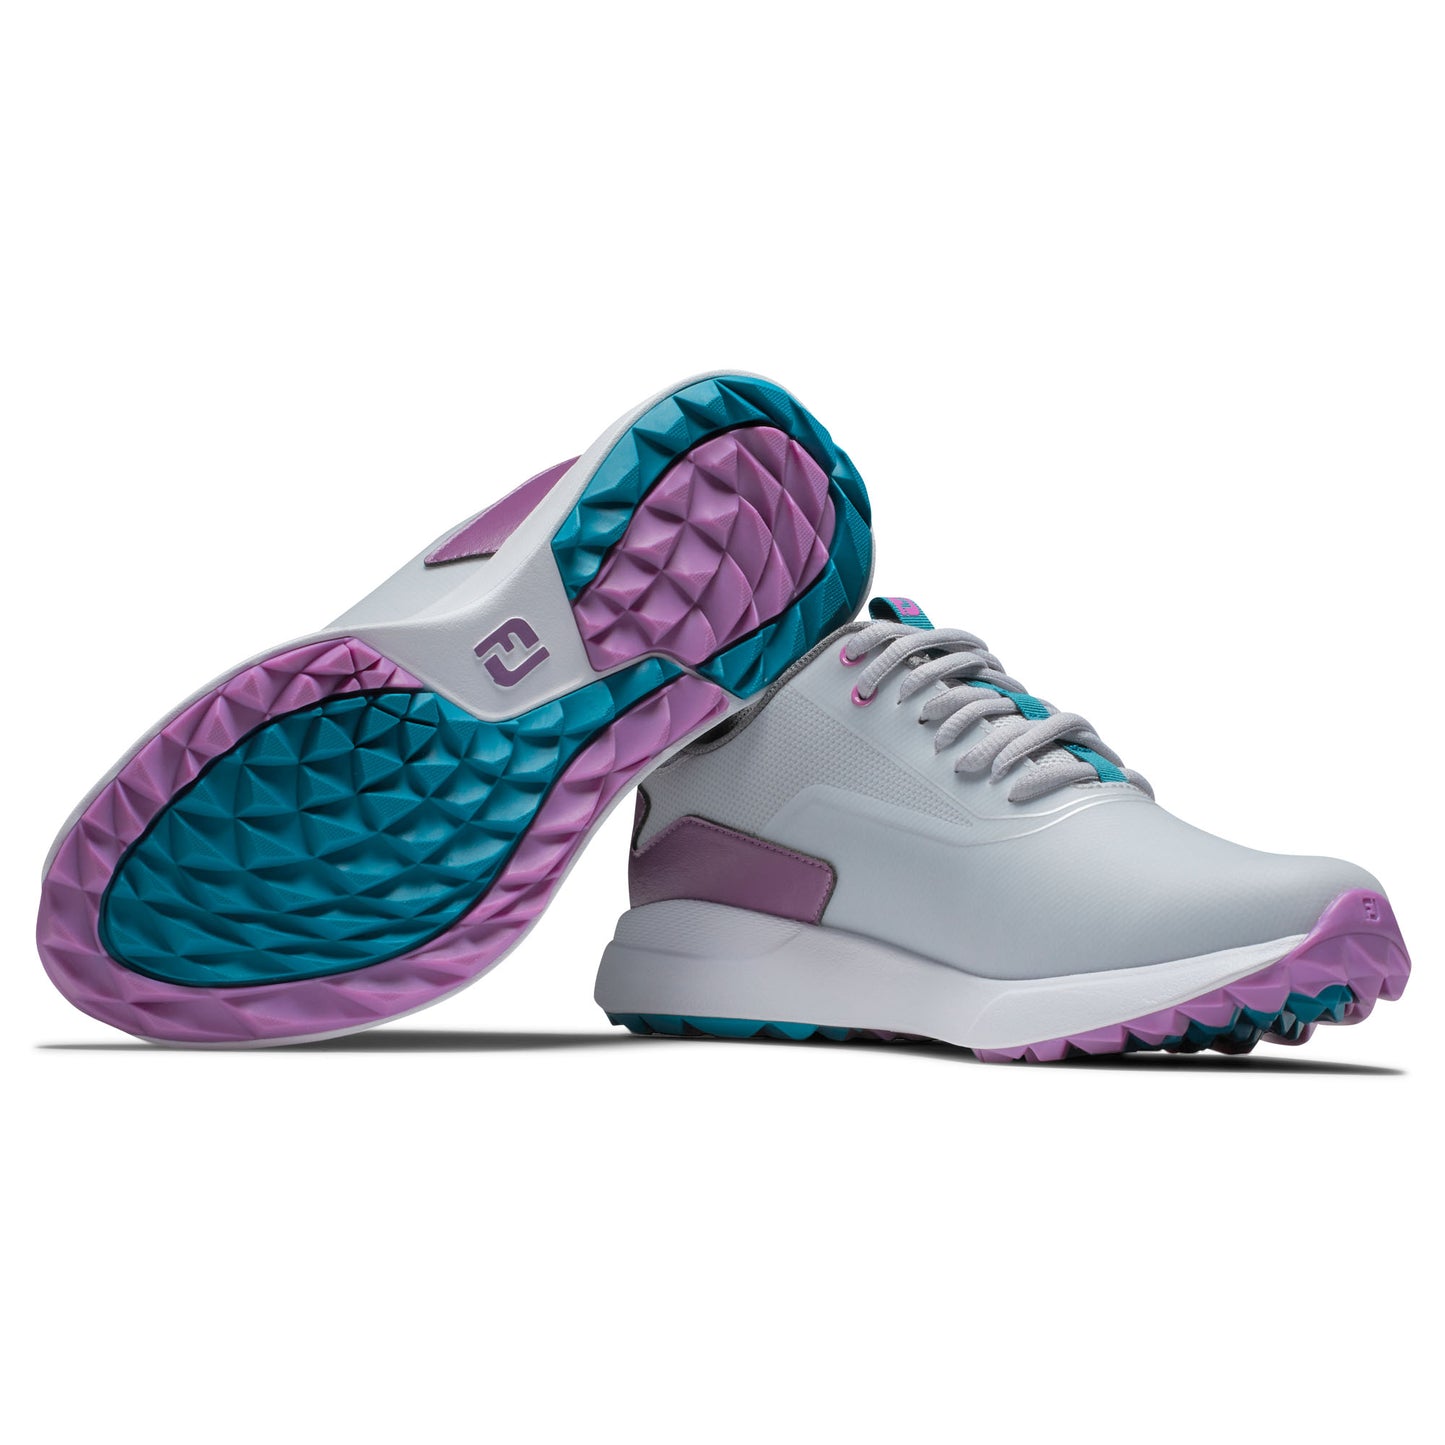 FootJoy Ladies Wide Fit Waterproof Performa Spikeless Golf Shoes in Grey, White & Purple